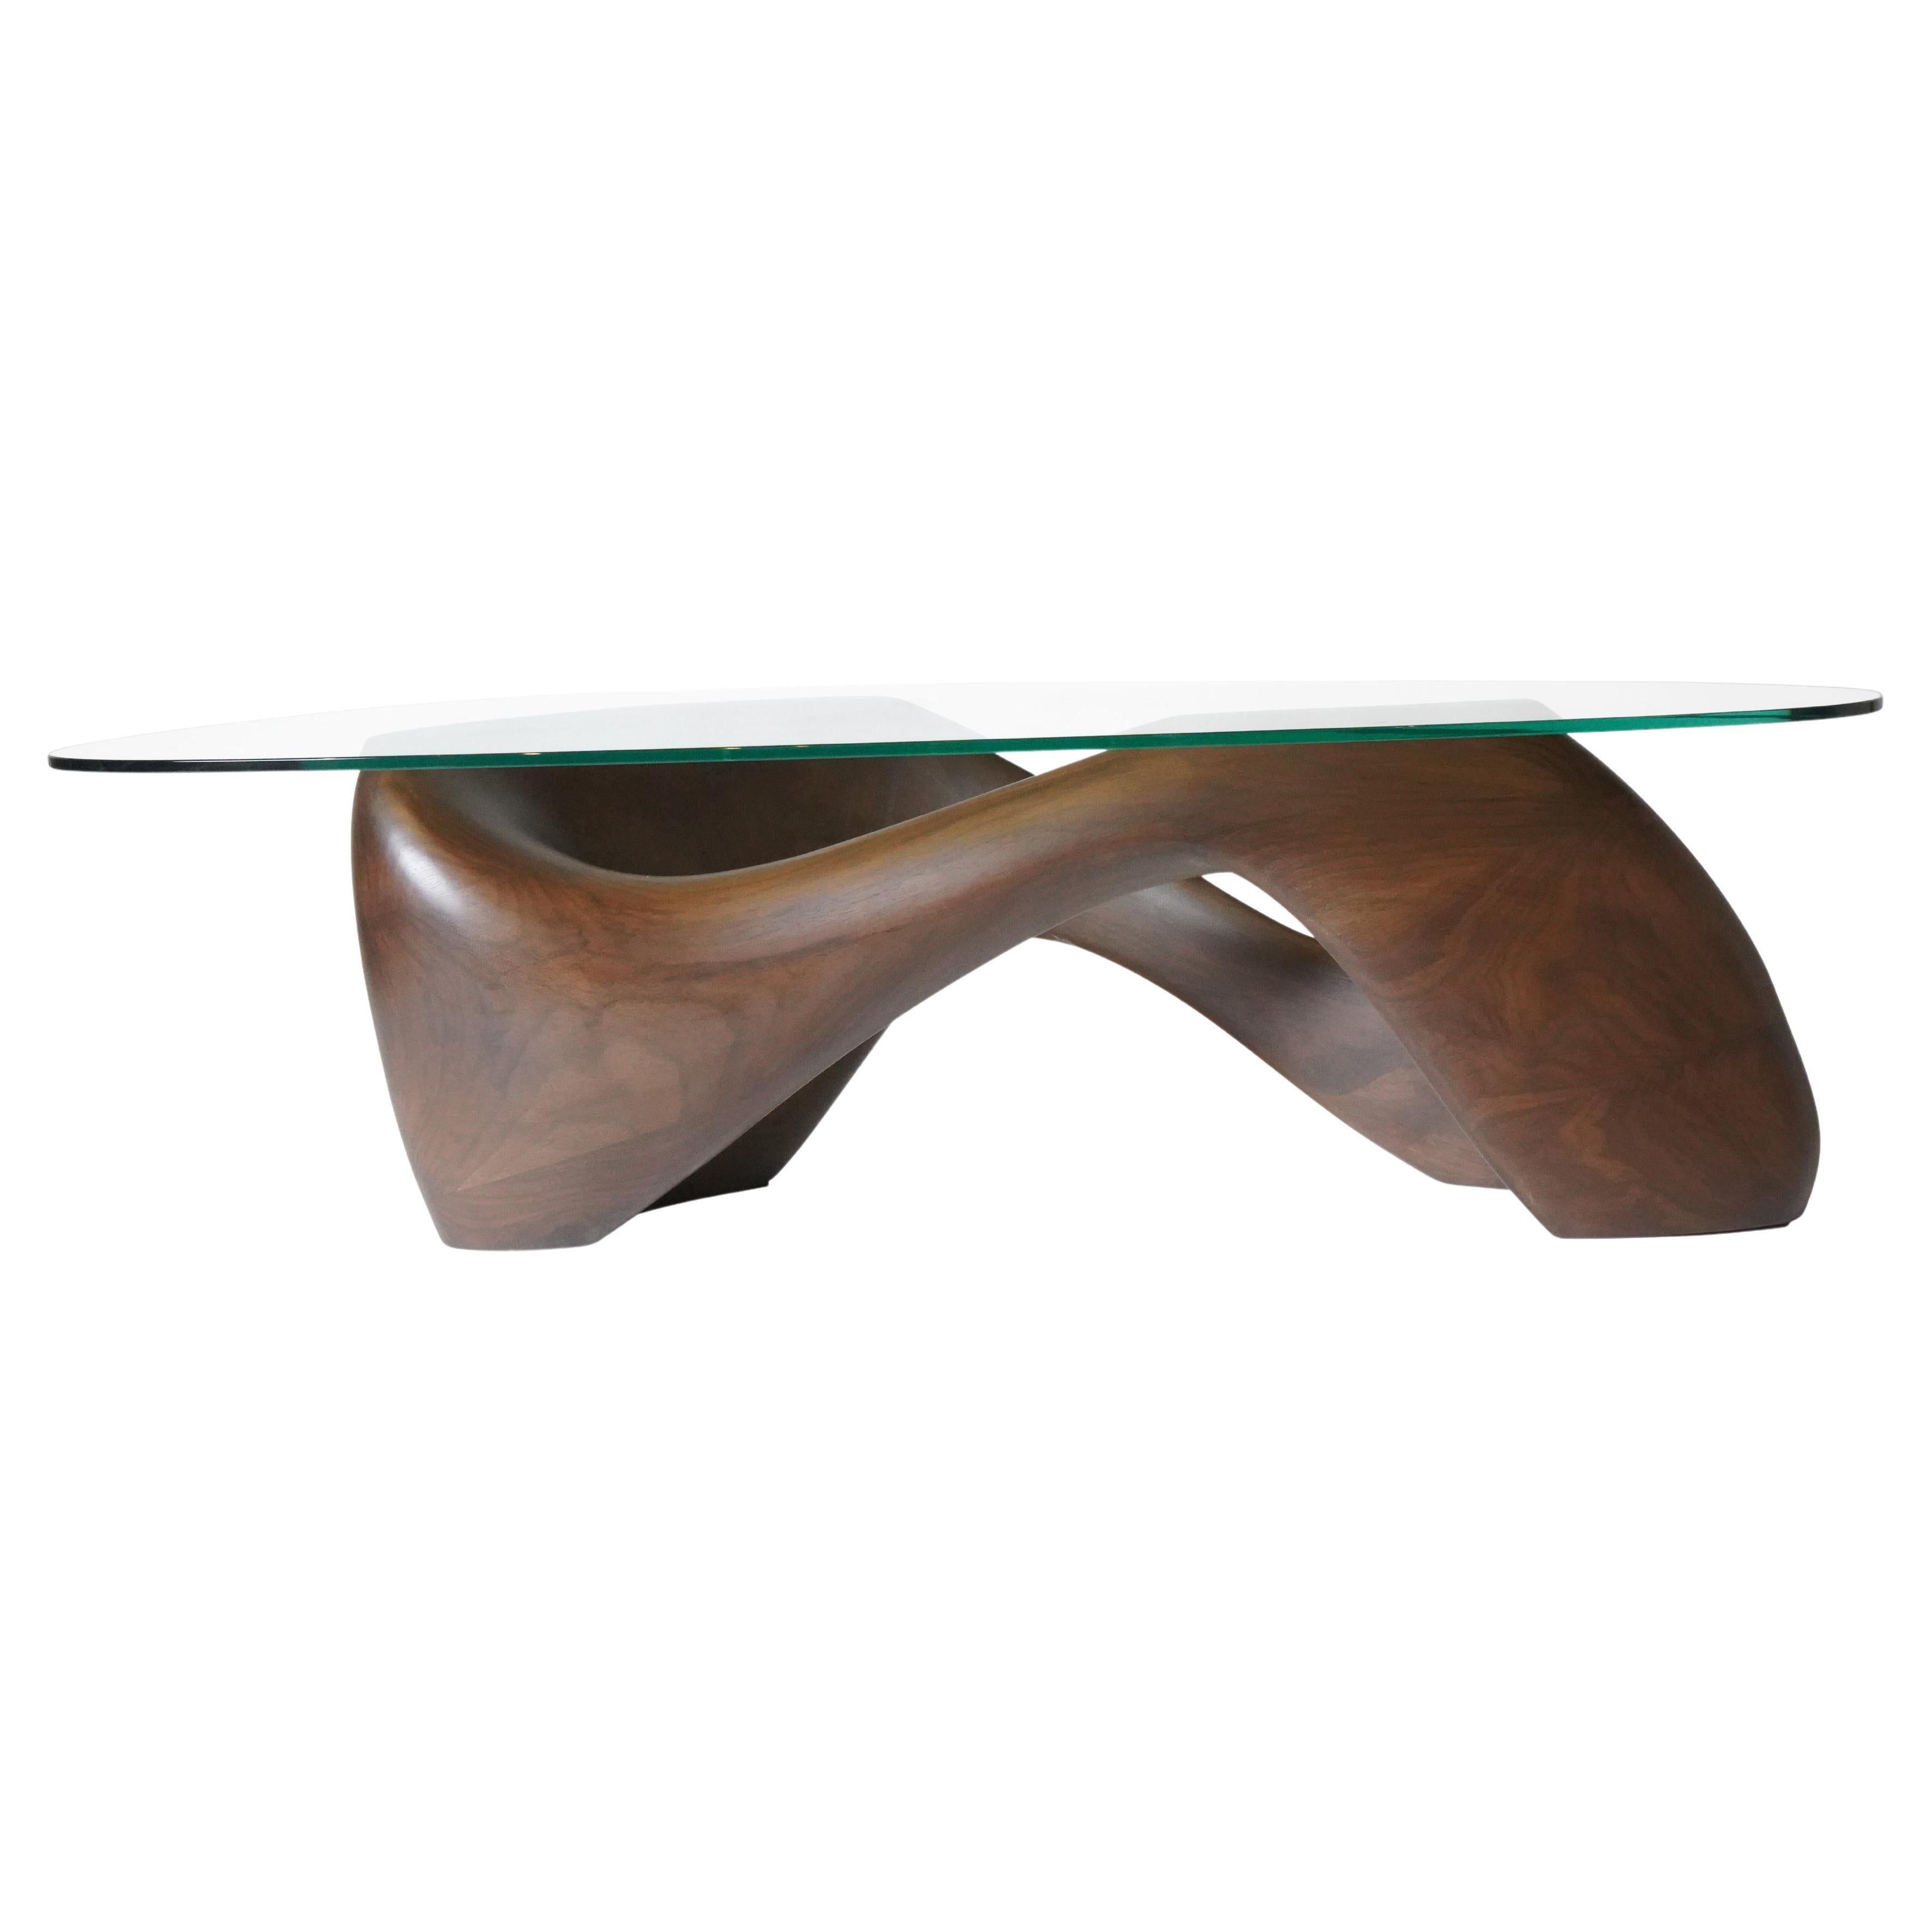 Der Lust Couchtisch ist ein futuristischer, skulpturaler Kunsttisch mit einer dynamischen Form, entworfen und hergestellt von Amorph. Lust ist aus Walnussholz mit Montana-Beize gefertigt. Maße: Lust kommt mit einer 1/2